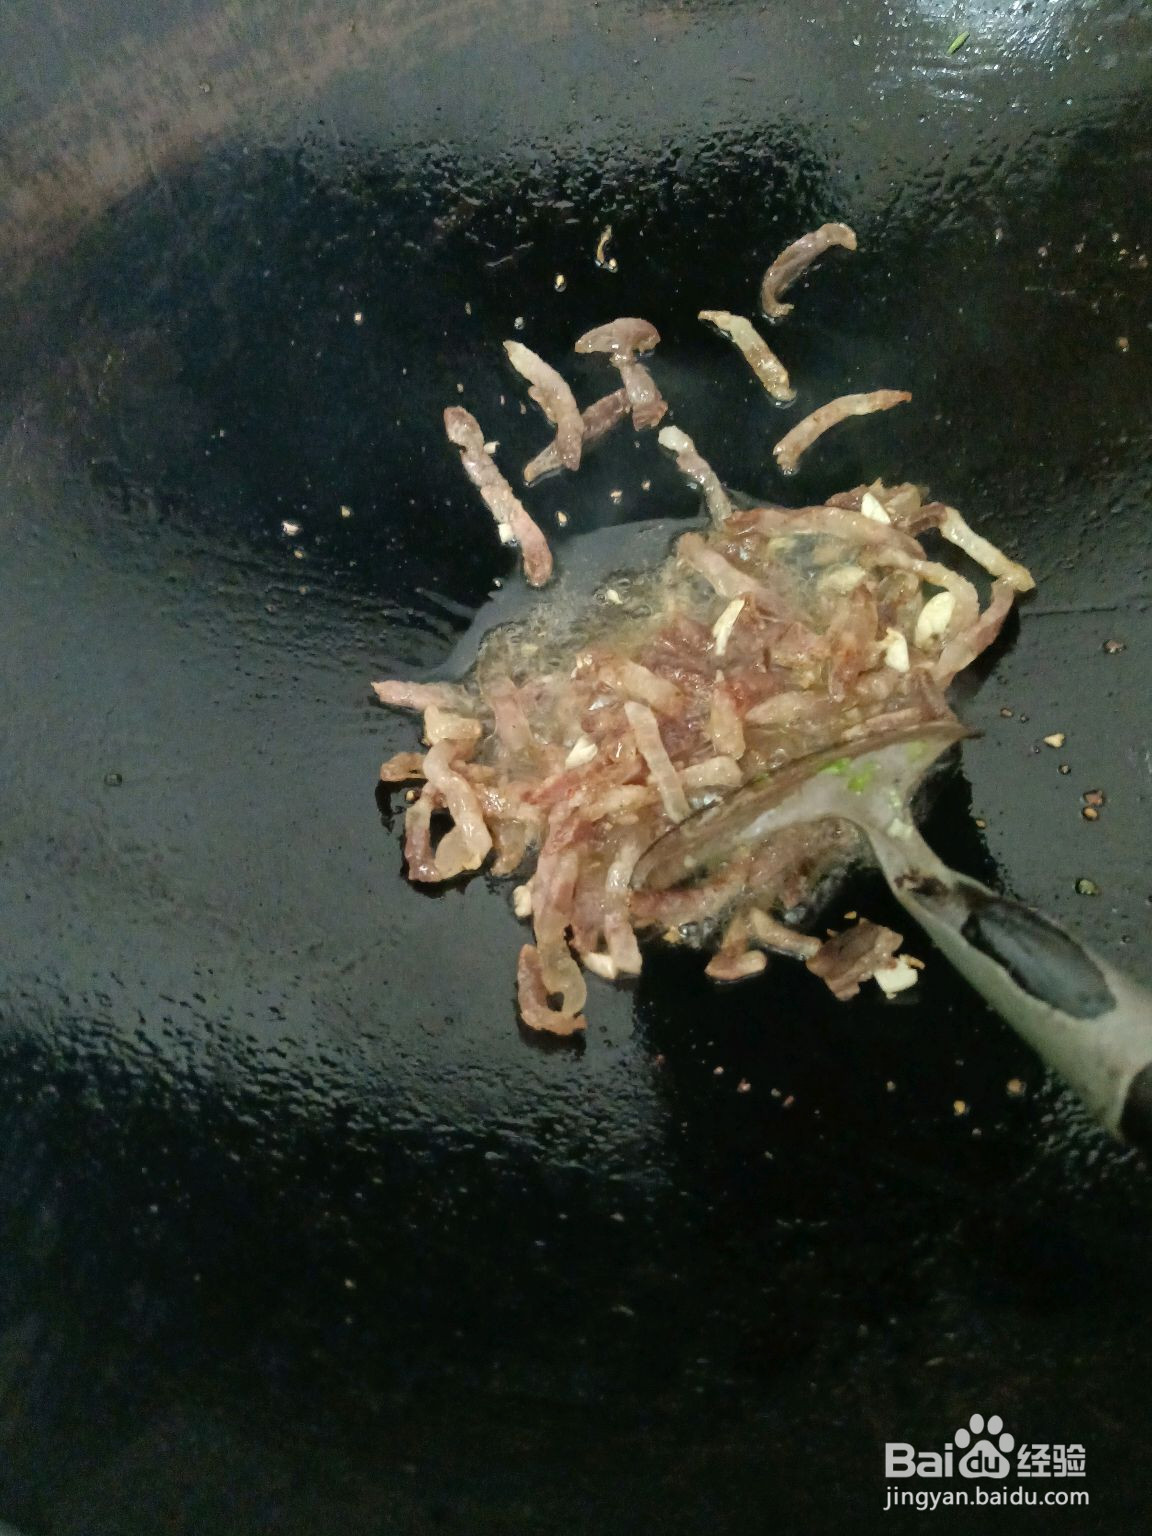 蕨菜炒腊肉的做法